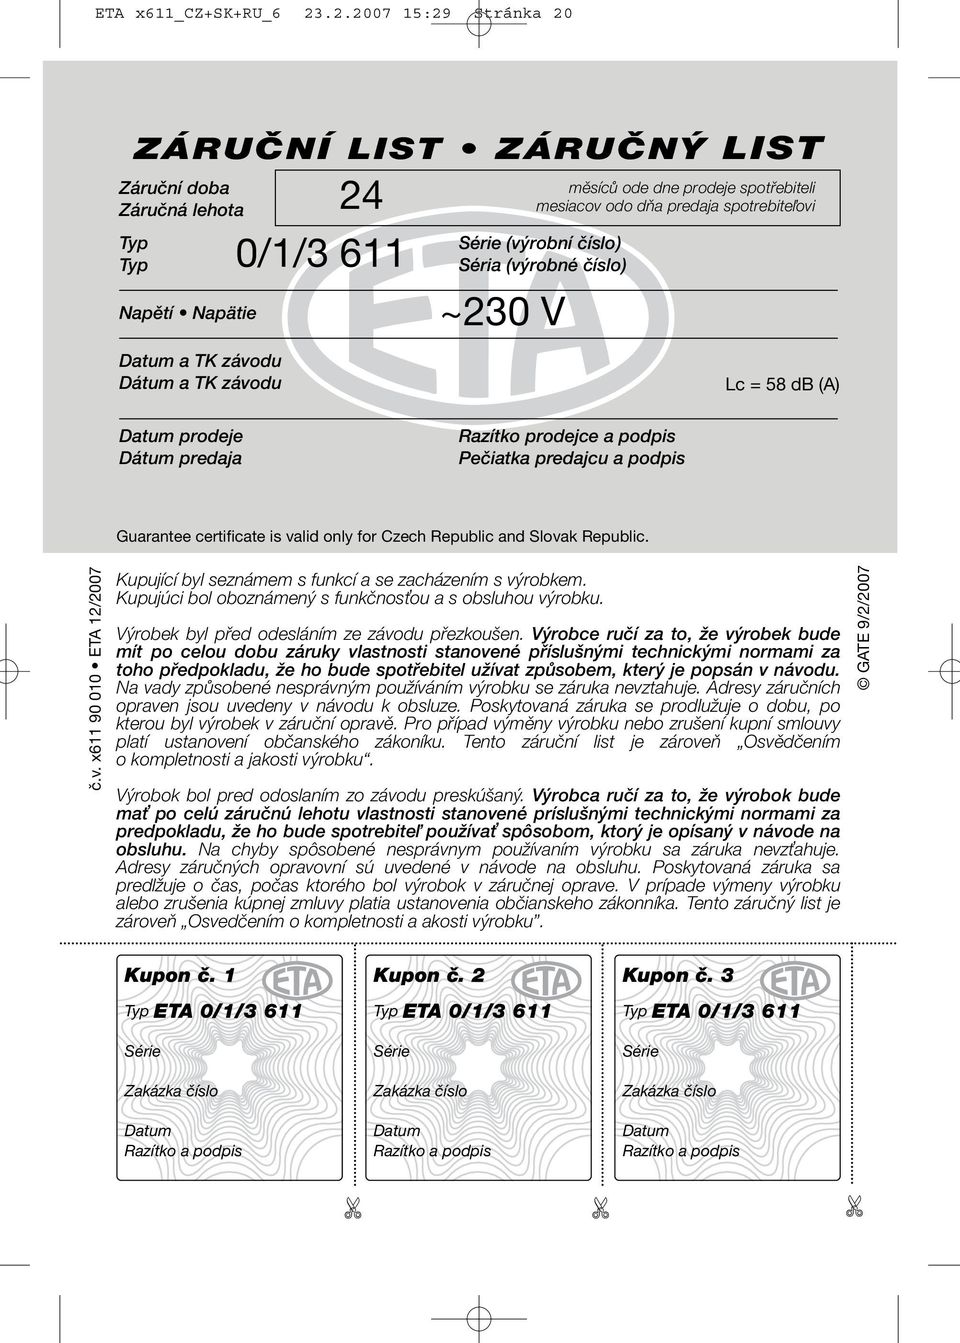 dňa predaja spotrebiteľovi Série (výrobní číslo) Séria (výrobné číslo) ~230 V Lc = 58 db (A) Datum prodeje Dátum predaja Razítko prodejce a podpis Pečiatka predajcu a podpis Guarantee certificate is